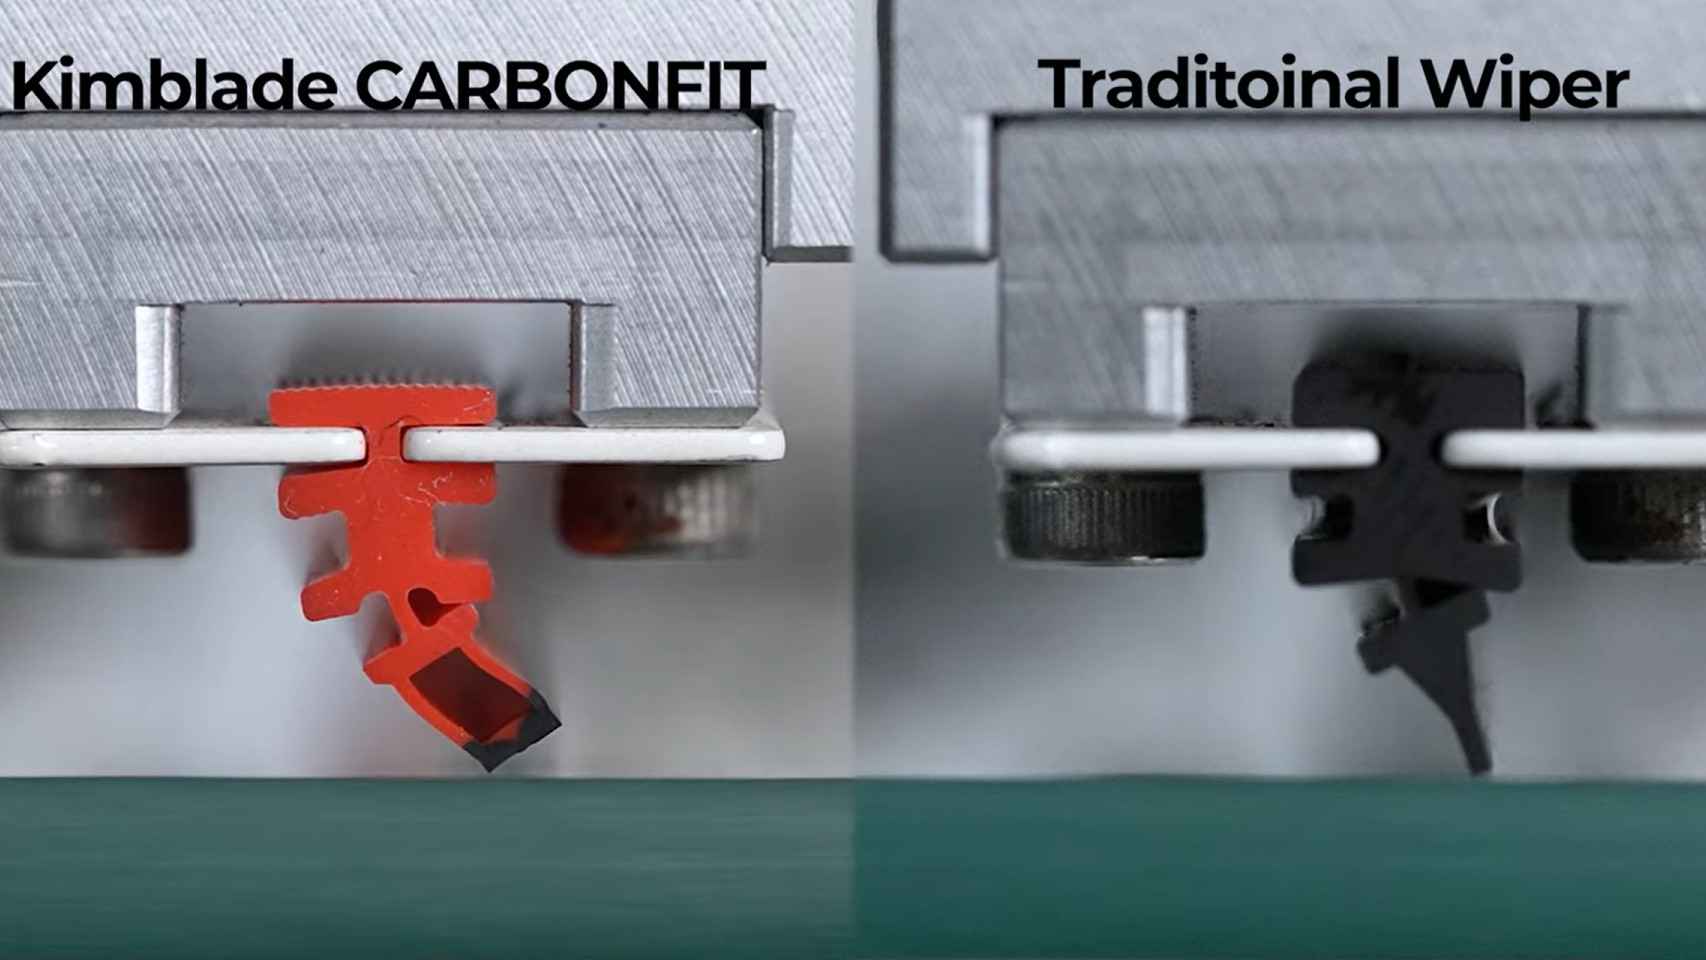 El diseño rectangular de CarbonFit y el triangular de los limpiapabrisas convencionales